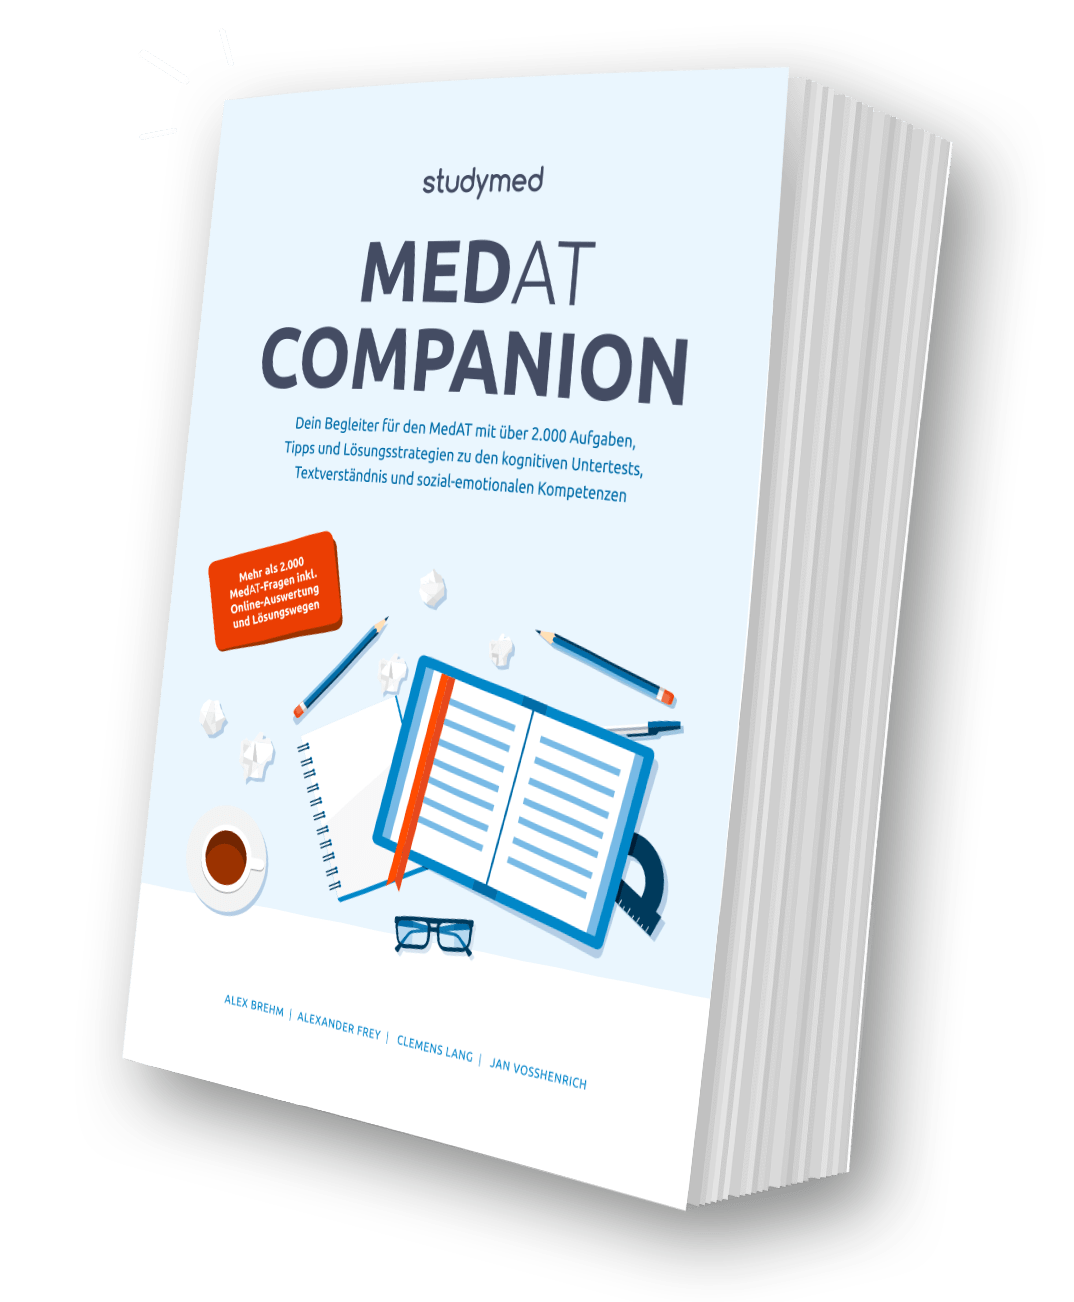 Das MedAT-Companion Buch von studymed